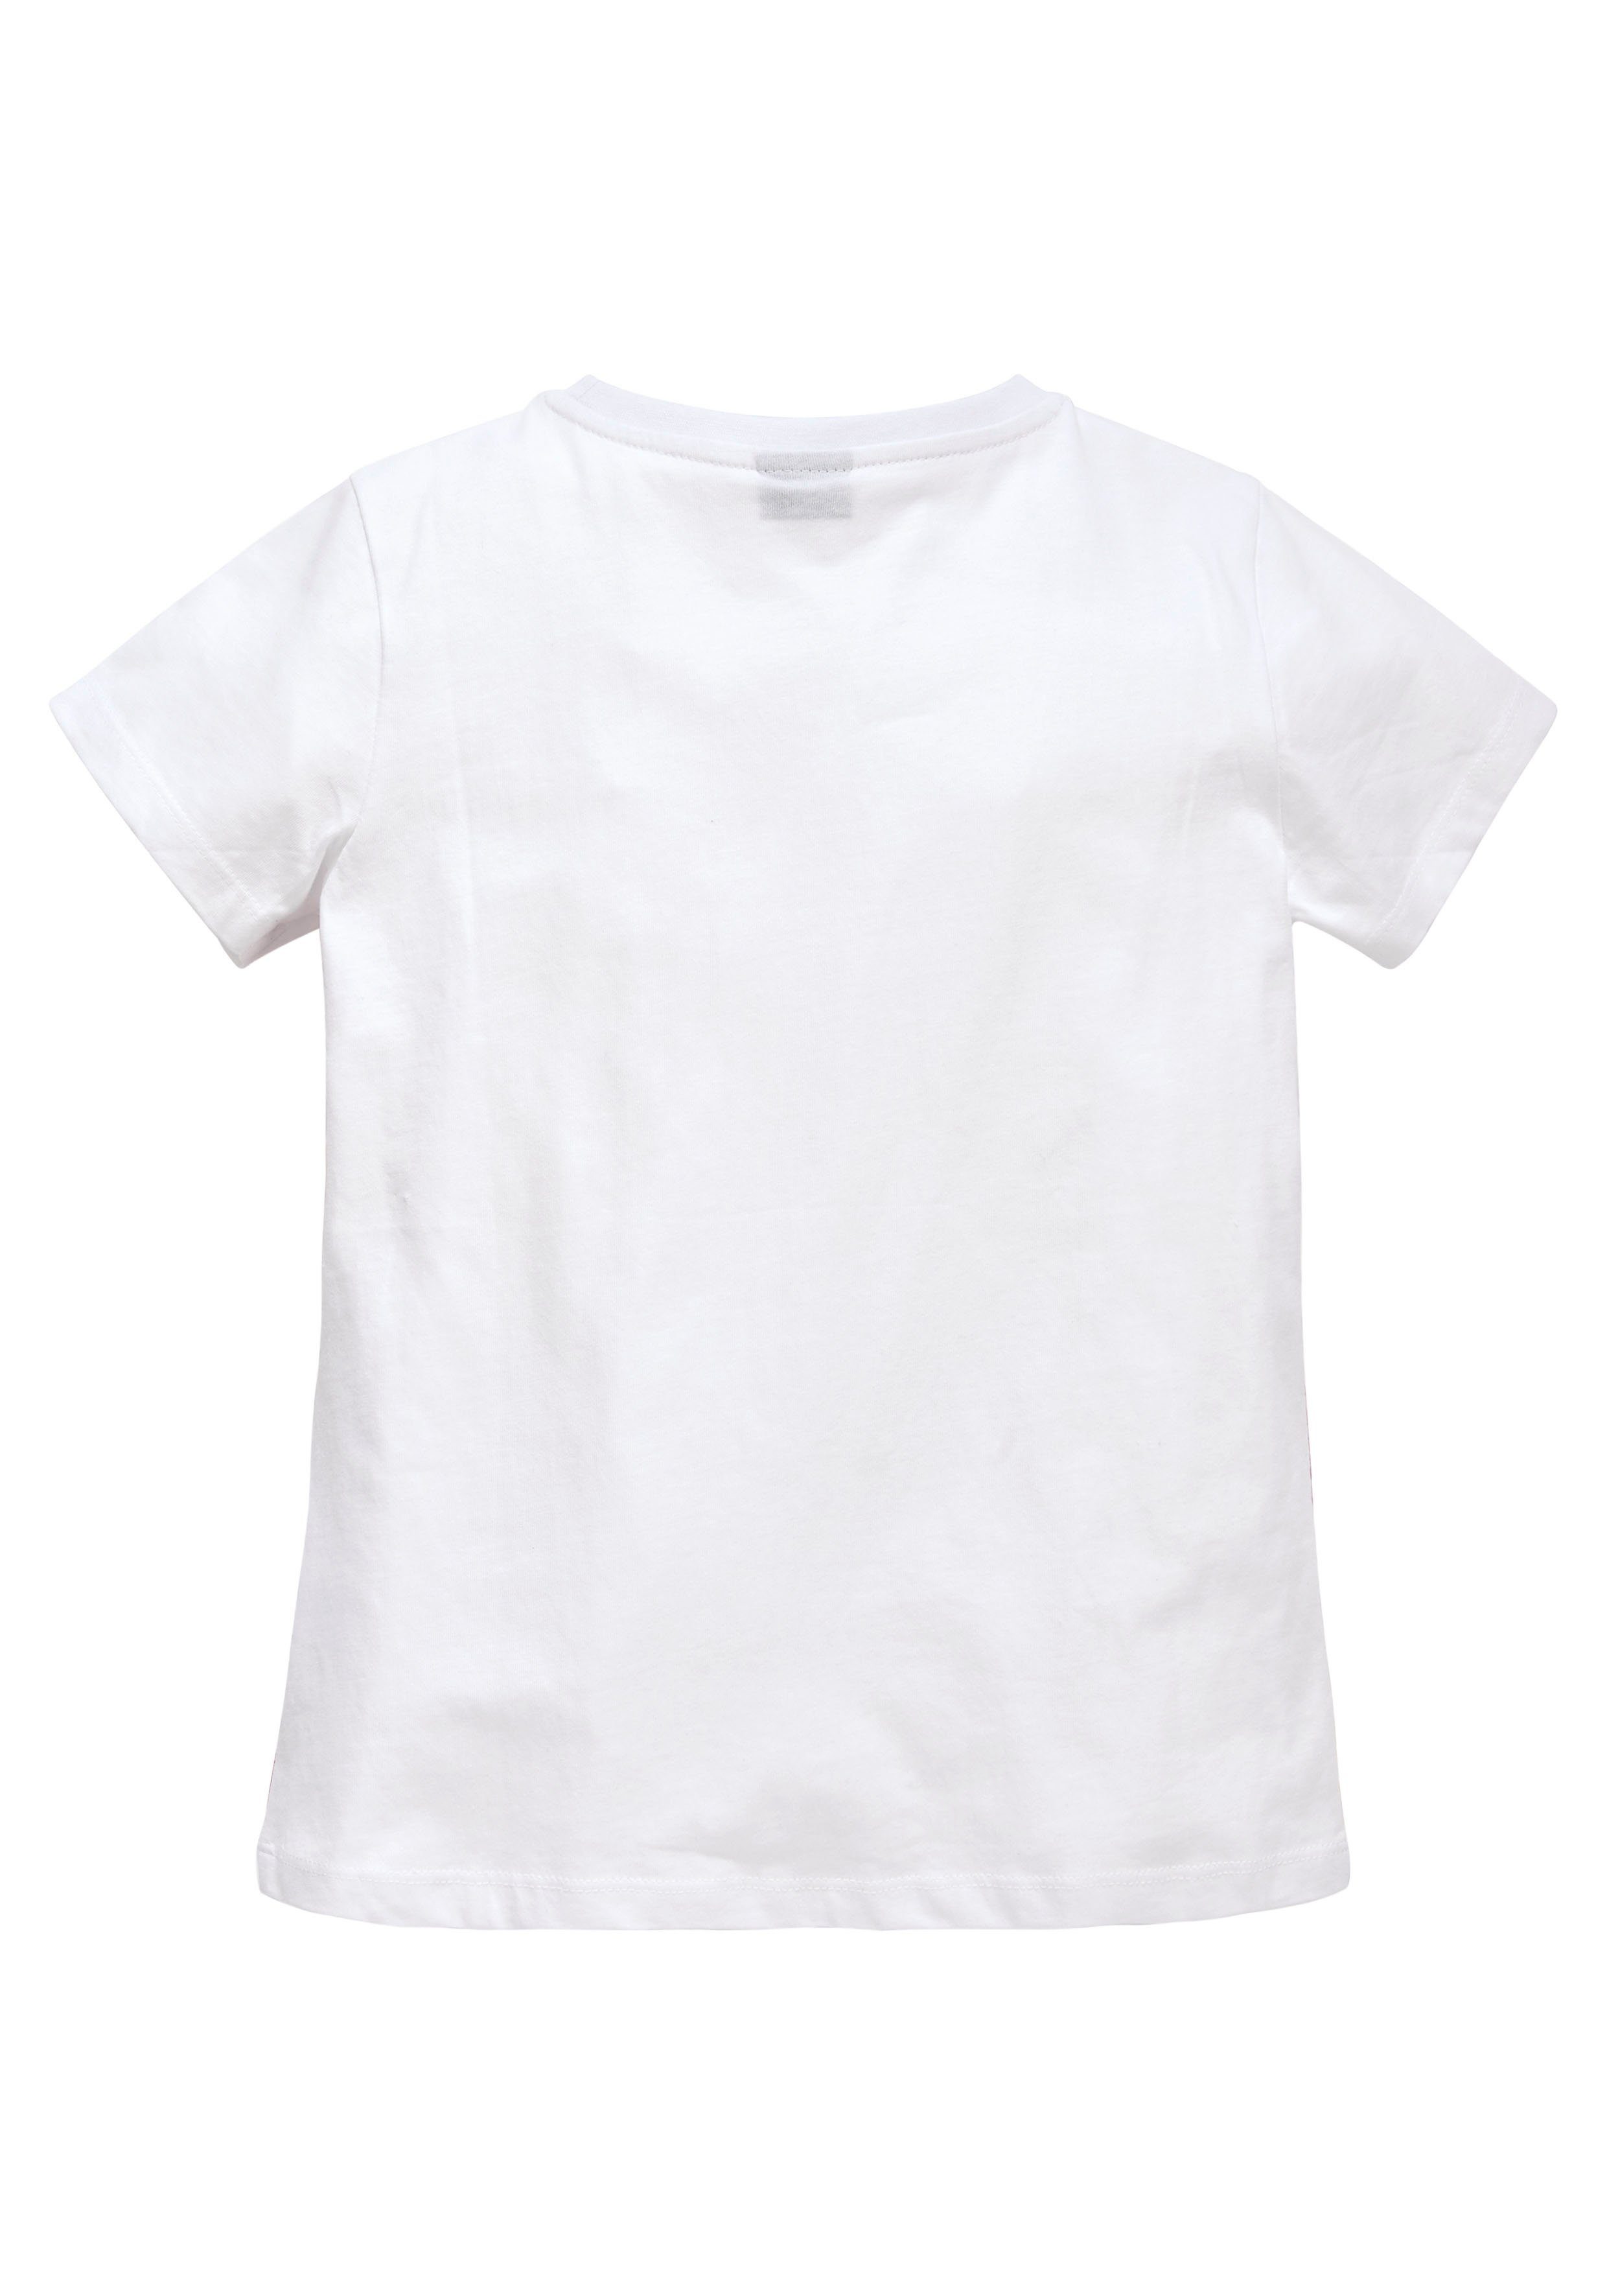 KIDSWORLD T-Shirt in taillierter Form leicht